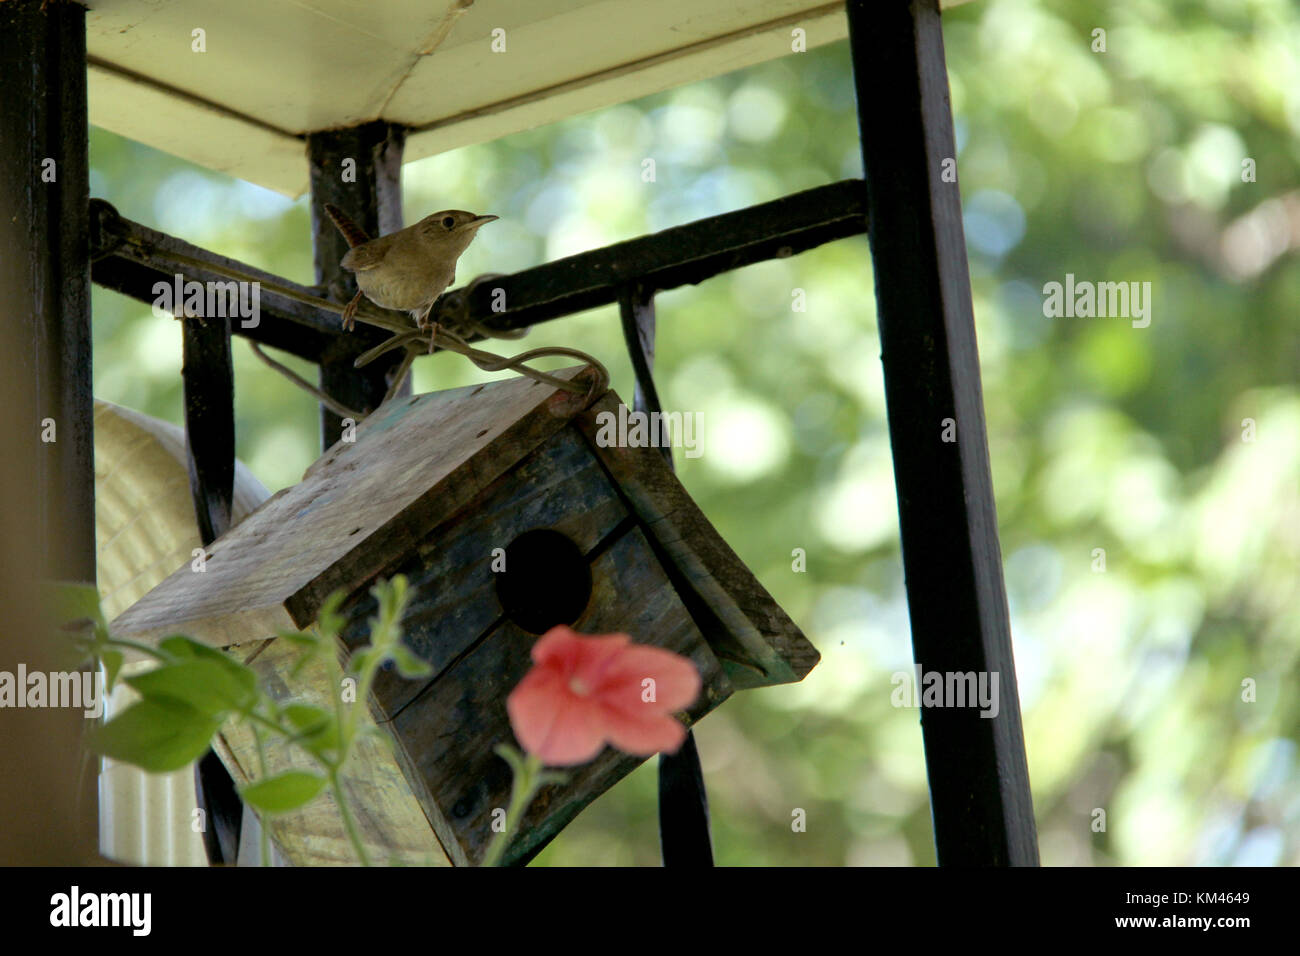 Bewick's wren on birdhouse Stock Photo